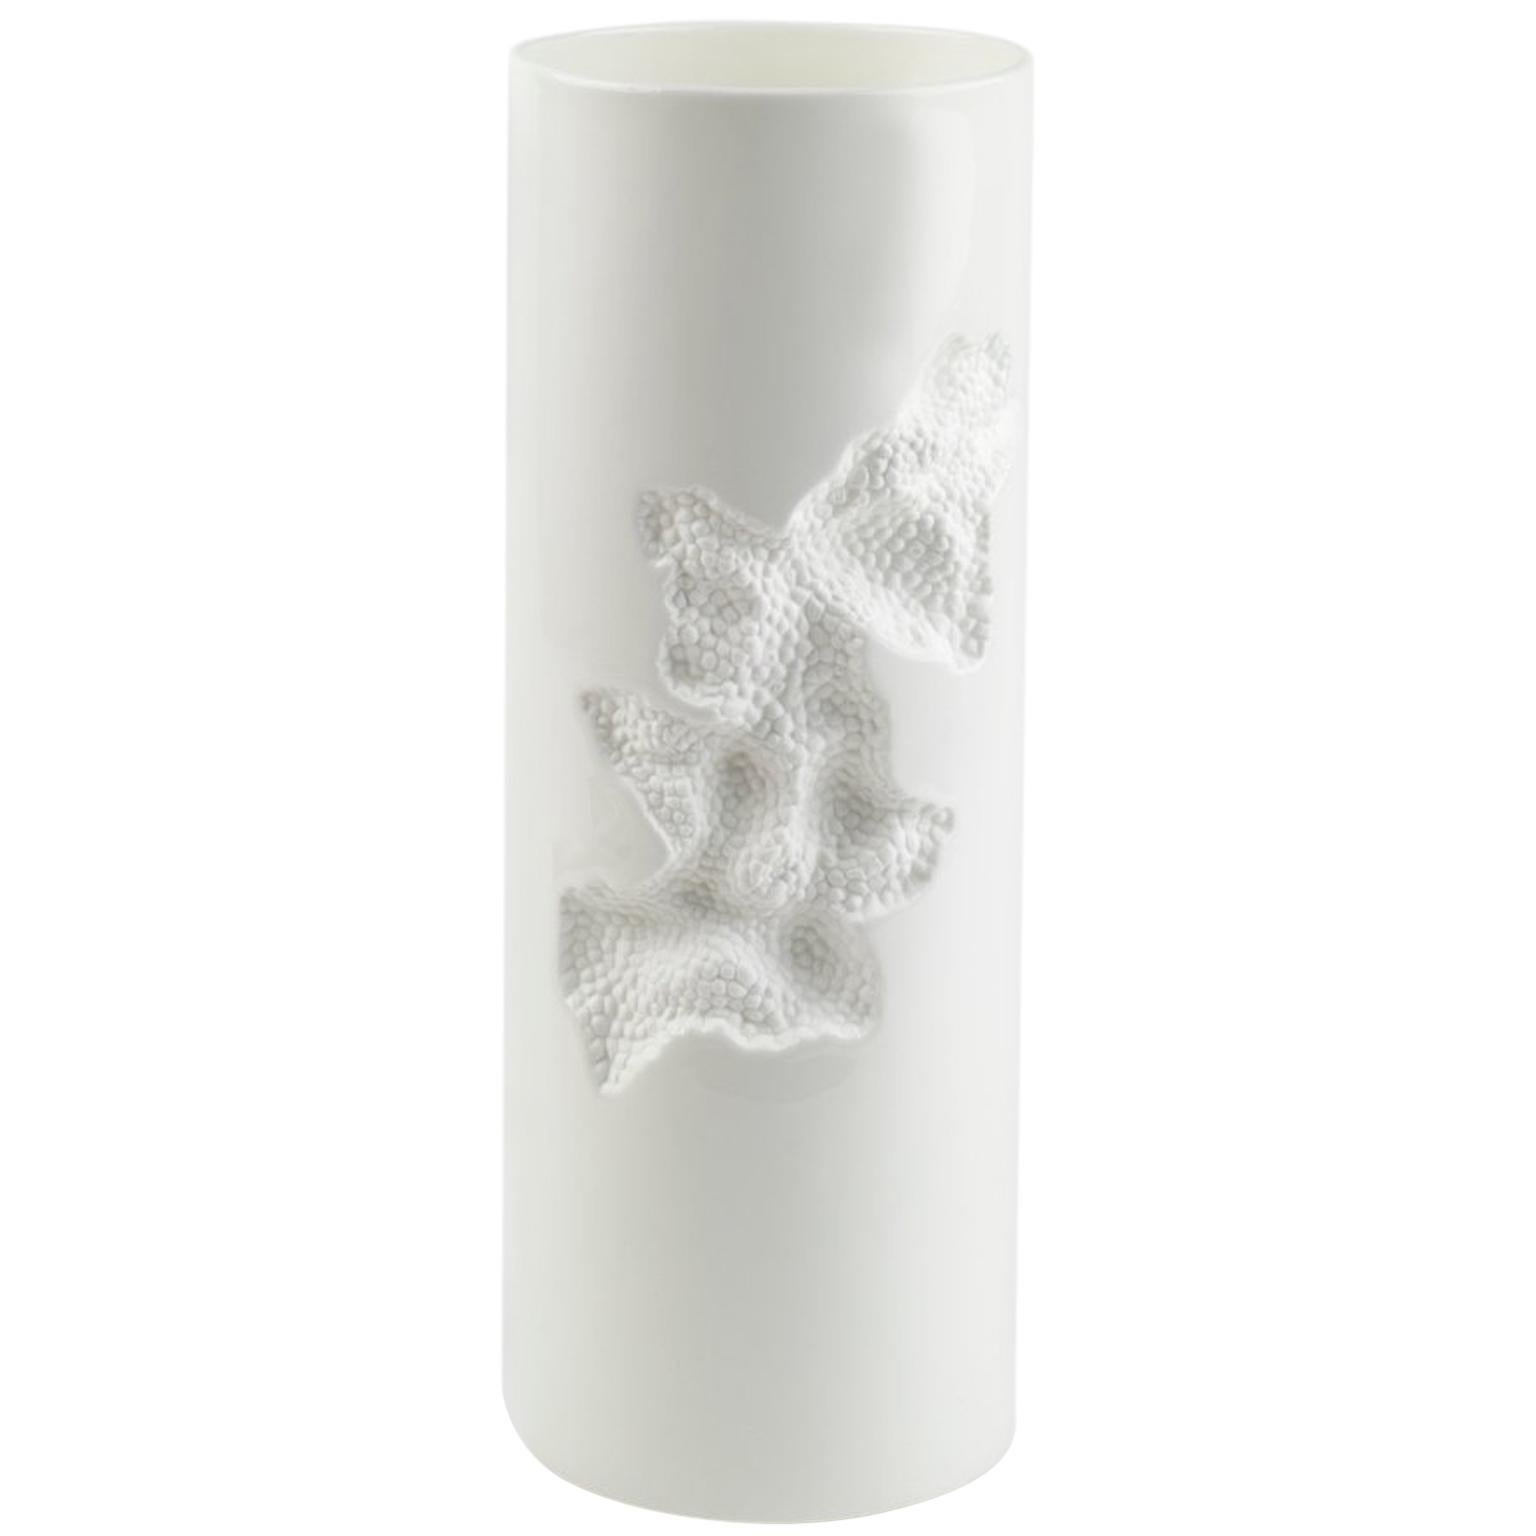 Vase positif contemporain en céramique cylindrique avec détails gravés en blanc